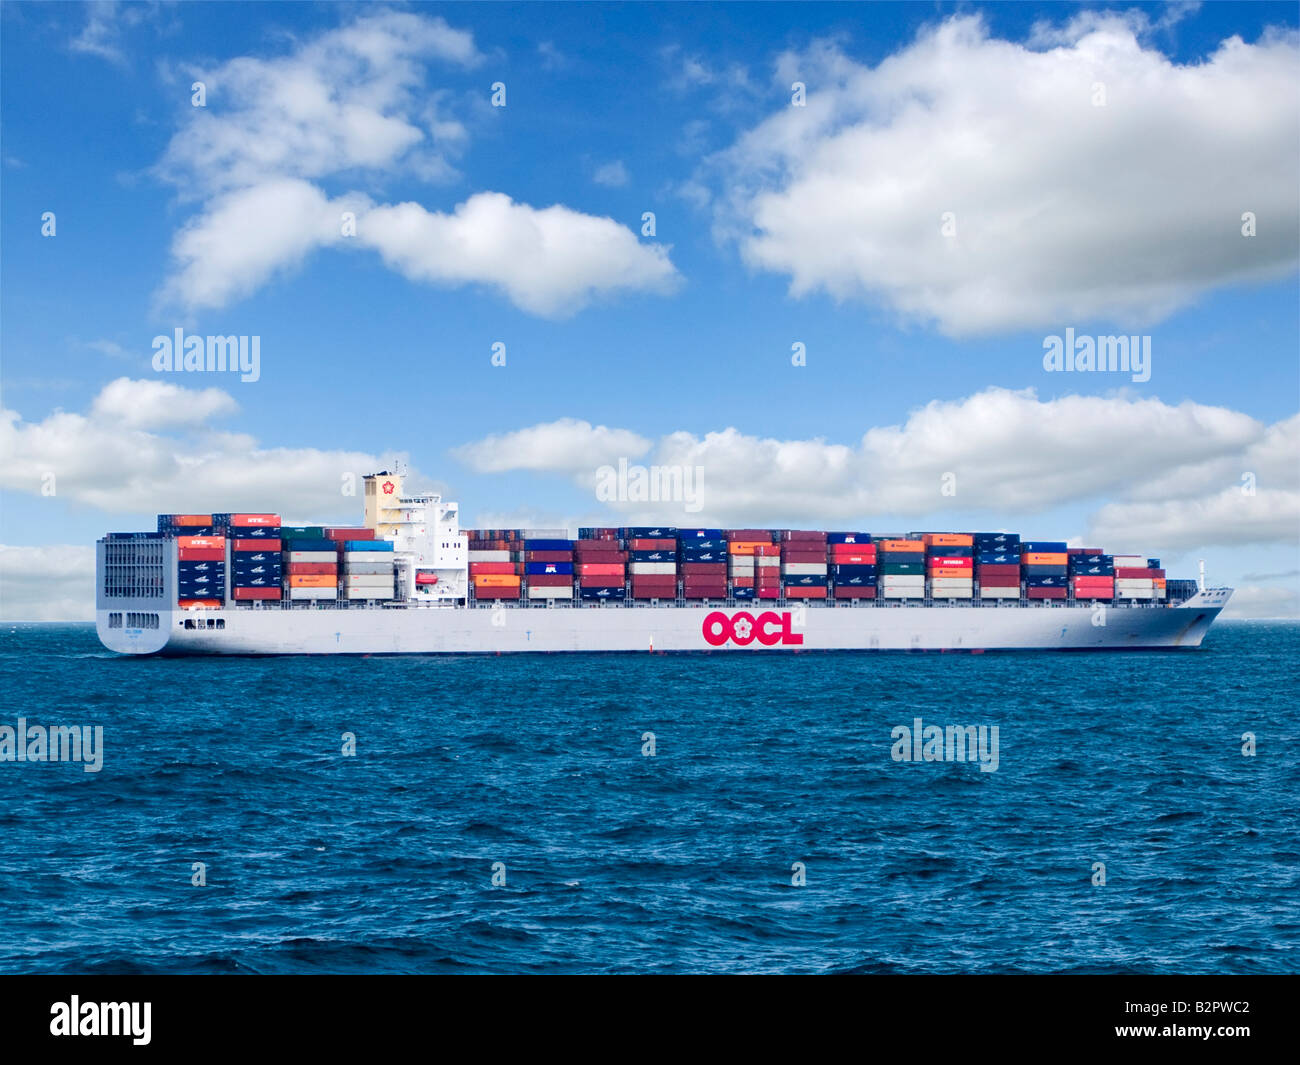 Containerschiff oder Fracht schiff mit Containern Segeln am Meer Ozean Mitte English Channel UK geladen Stockfoto